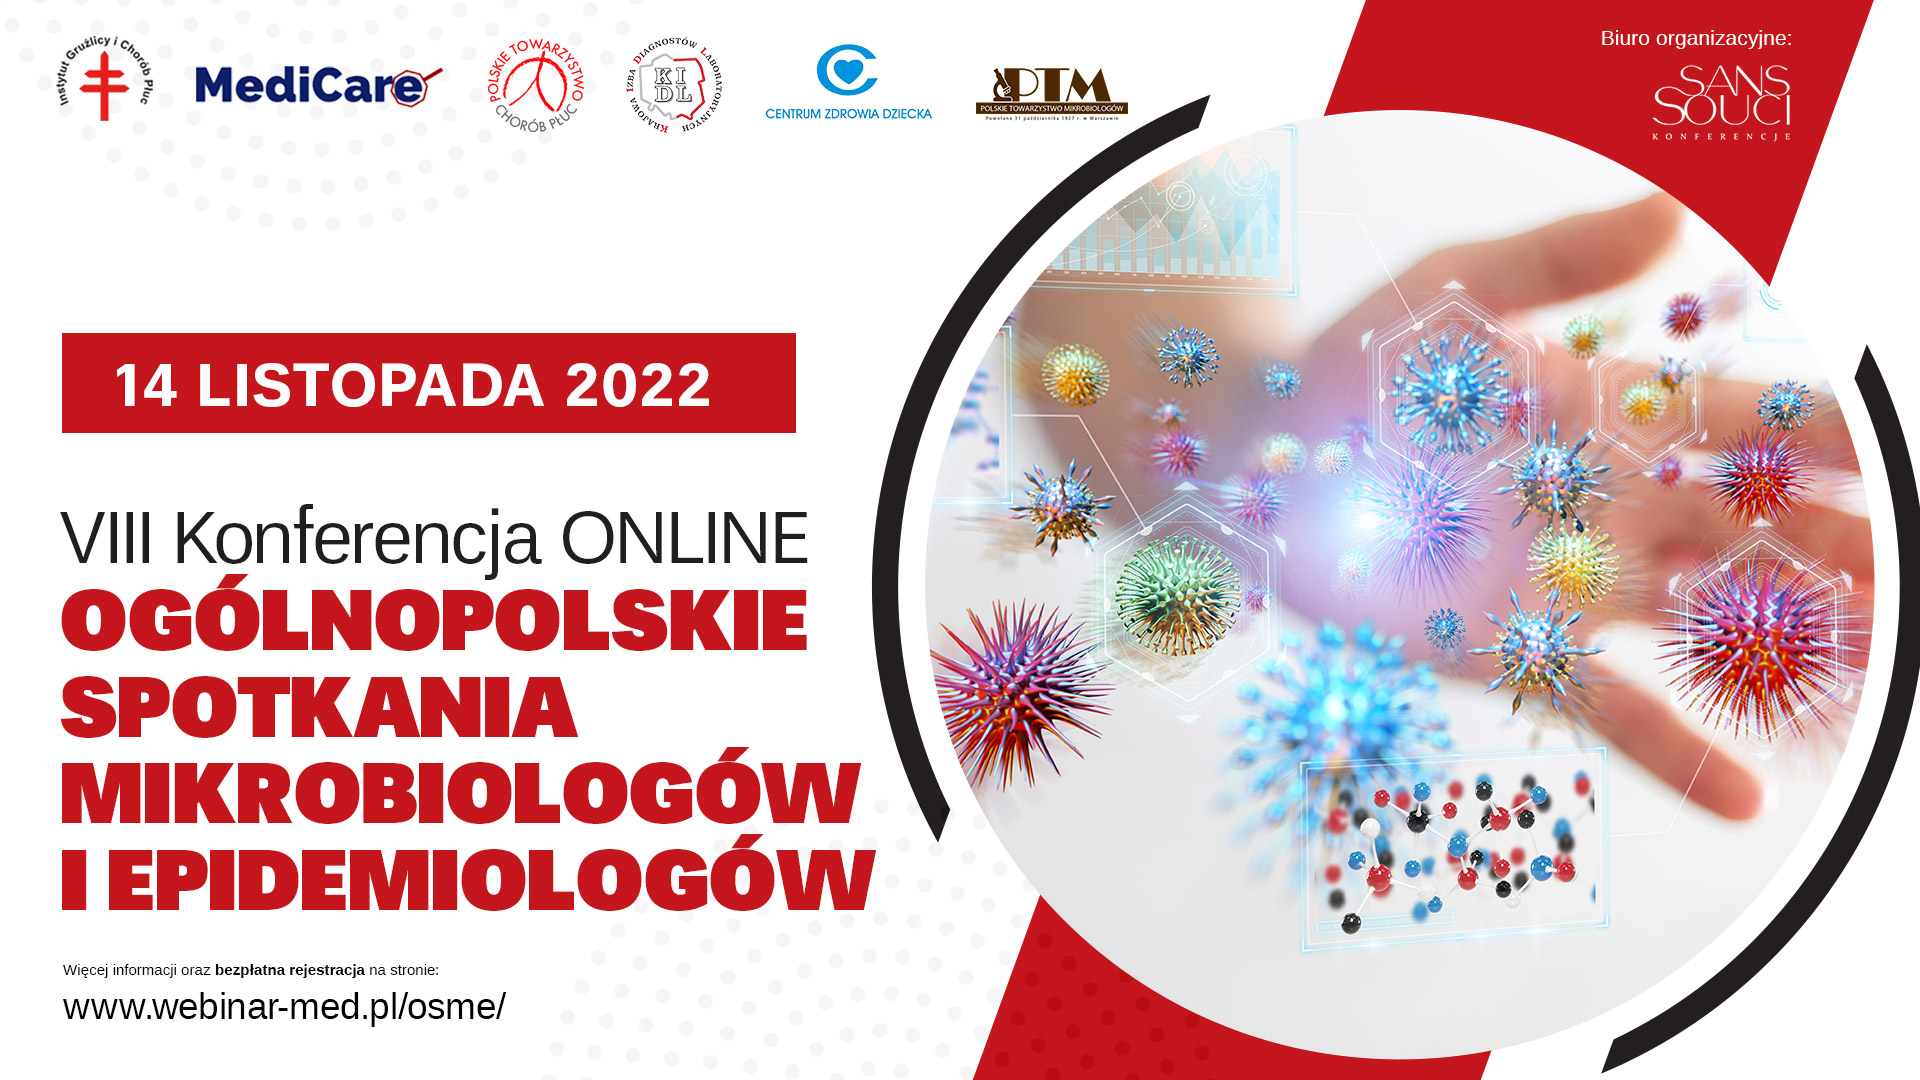 Ogólnopolskie Spotkania Mikrobiologów i Epidemiologów 14 listopada 2022